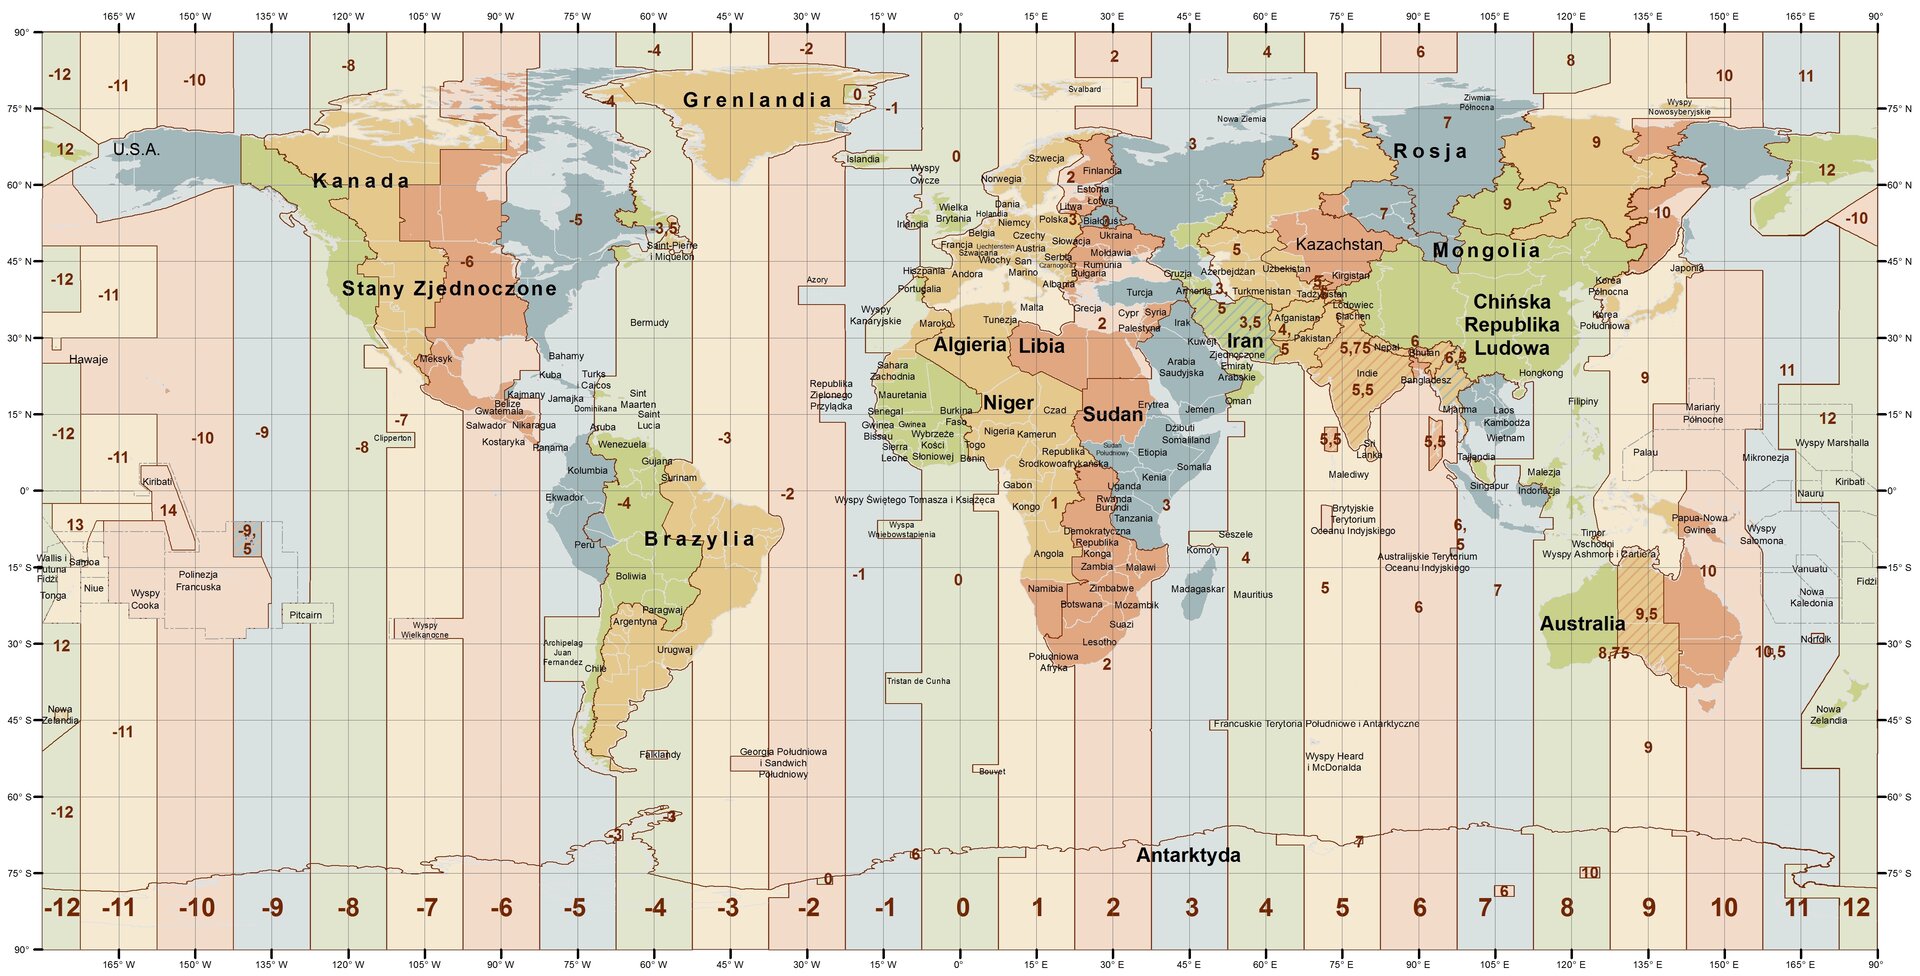 Mapa świata przedstawia podział na strefy czasowe. Nowa Kaledonia znajduje się w strefie minus 12. Następnie jest strefa minus 11 obejmująca 165 stopni W. W strefie minus 10 znajdują się Hawaje, Wyspy Cooka, Polinezja Francuska. Obejmuje południk 160 stopni W. Strefa minus 9 obejmuje Alaskę oraz południk 135 stopni W. Strefa minus 8 obejmuje zachodnie wybrzeże Ameryki Północnej oraz południk 120 stopni W. Strefa minus 7 obejmuje Stany Zjednoczone, Kanadę oraz południk 105 stopni W. Strefa minus 6 obejmuje Kanadę , Stany Zjednoczone, Meksyk, Amerykę Środkową, Wyspy Wielkanocne oraz południk 90 stopni W. Strefa minus 5 obejmuje wschodnią Amerykę Północną, Bahamy, Kubę, Kolumbię, Ekwador, Peru oraz południk 75 stopni W. Strefa minus 4 obejmuje najbardziej wysunięty na wschód teren Ameryki Północnej, Wenezuelę, zachodnią Brazylię, Boliwię, Chile oraz południk 60 stopni W. Strefa minus 3 obejmuje Grenlandię, wschodnią Brazylię, Argentynę, Urugwaj oraz południk 45 stopni W. Strefa minus dwa obejmuje Georgię Południową i Sandwich Południowy oraz południk 30 stopni W. Strefa minus 1 obejmuje południk 15 stopni W. Strefa 0 obejmuje Islandię, Irlandię, Wielką Brytanię, Portugalię, zachodnią Afrykę oraz południk 0 stopni. Strefa 1 obejmuje Europę zachodnią i środkową, środkową Afrykę w tym Algierię , Niger, Kongo, Czad, Angolę oraz południk 15 stopni E. Strefa 2 obejmuje wschodnią Europę w tym Finlandię, Ukrainę, Grecję, wschodnią Afrykę w tym Libię, Egipt, Sudan, Namibię, Botswanę, Republikę Południowej Afryki oraz południk 30 stopni E. Strefa 3 obejmuje Białoruś, część Rosji, Turcję, Arabię Saudyjską, Etiopię, Somalię, Kenię, Tanzanię, Madagaskar oraz południk 45 stopni E. Strefa 4 obejmuje Iran, Oman oraz południk 60 stopni E. Strefa 5 obejmuje część Rosji, Azerbejdżan, Uzbekistan, Afganistan, Pakistan, Indie oraz południk 75 stopni E. Strefa 6 obejmuje Kazachstan oraz południk 90 stopni E. Strefa 7 obejmuje część Rosji, Laos, Kambodżę, Indonezję oraz południk 105 stopni E. Strefa 8 obejmuje Mongolię, Chiny, zachodnią Australię oraz południk 120 stopni E. Strefa 9 obejmuje część Rosji i środkową Australię oraz południk 135 stopni E. Strefa 10 obejmuje część Rosji i wschodnią Australię oraz południk 150 stopni E. Strefa 11 obejmuje część Rosji, Mikronezję, Wyspy Salomona, Nową Kaledonię oraz południk 165 stopni E. Strefa 12 obejmuje część Rosji, Wyspy Marshalla, Nową Zelandię.